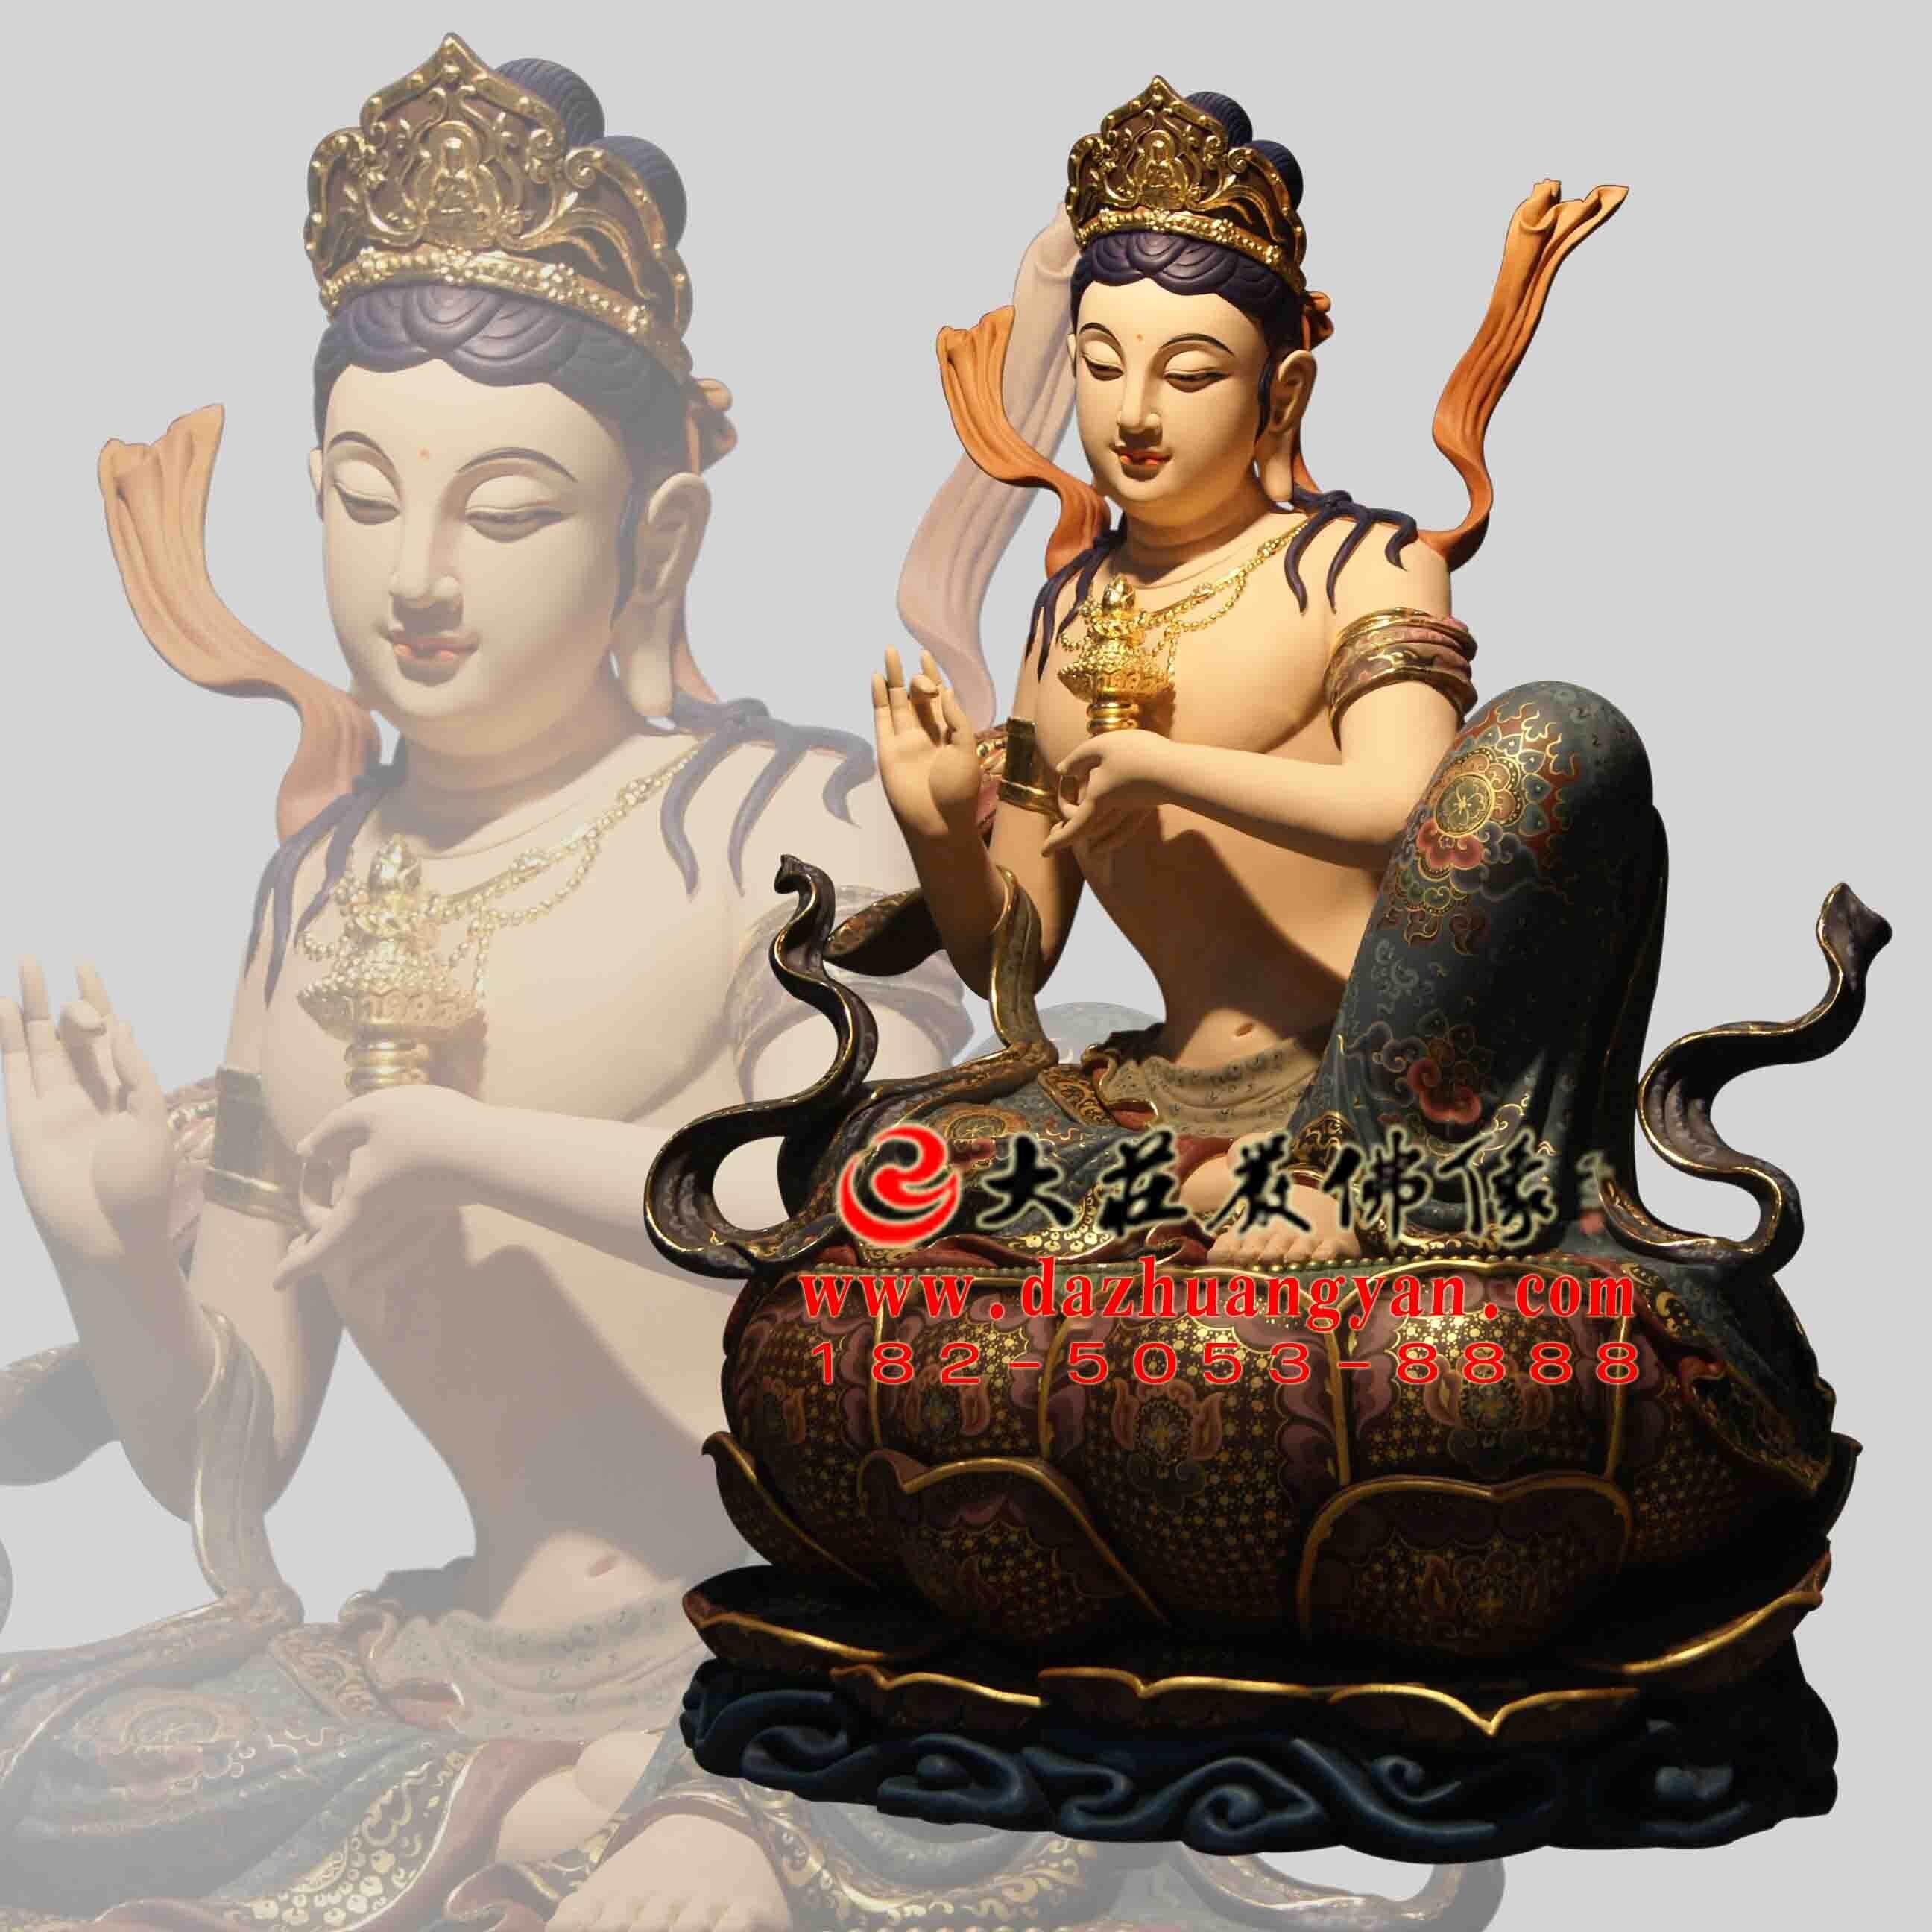 生漆脱胎供养菩萨彩绘佛像左侧像